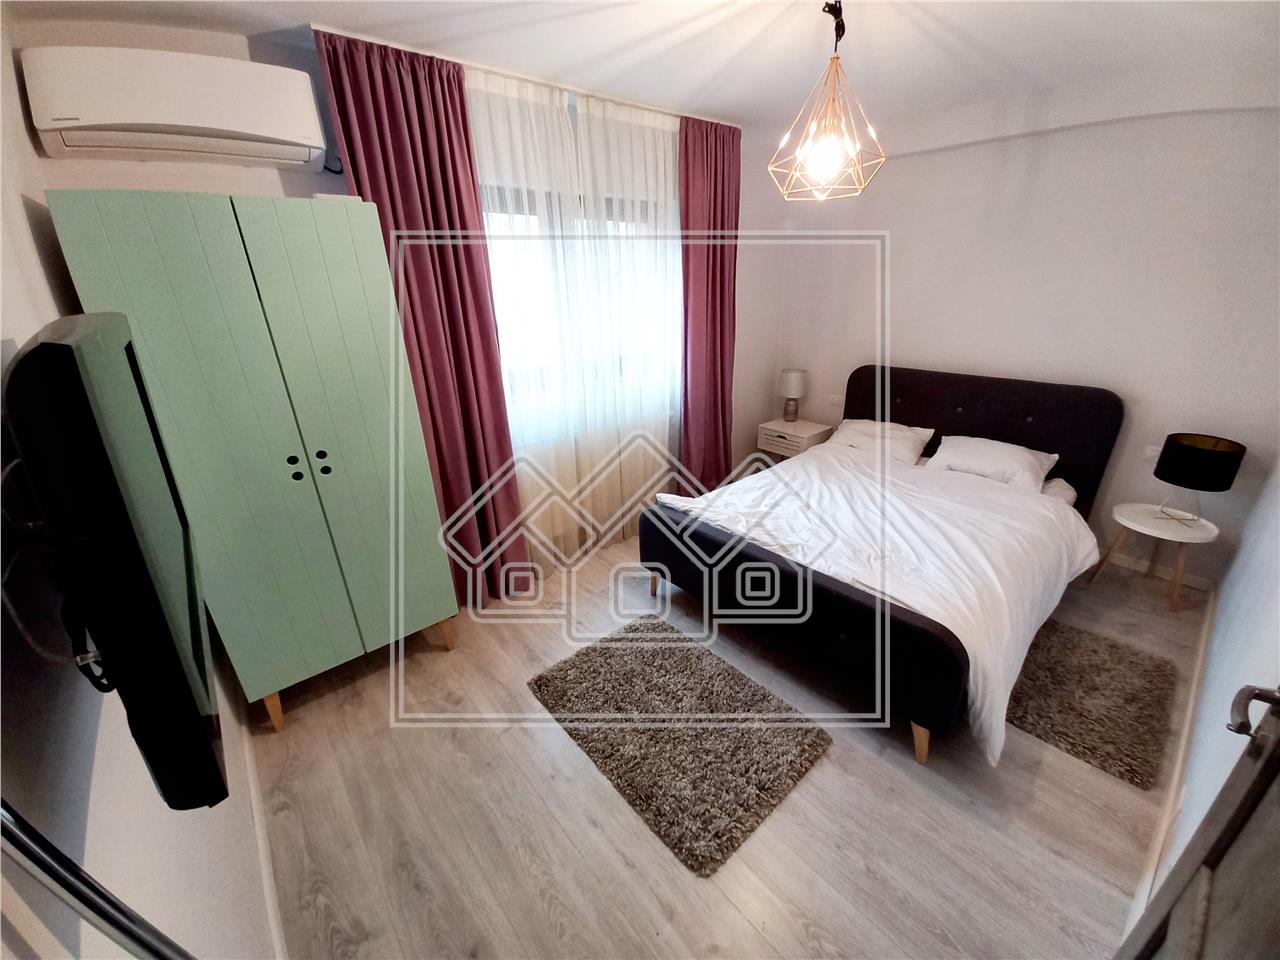 Apartment for rent in Alba Iulia - 2 rooms - parking space